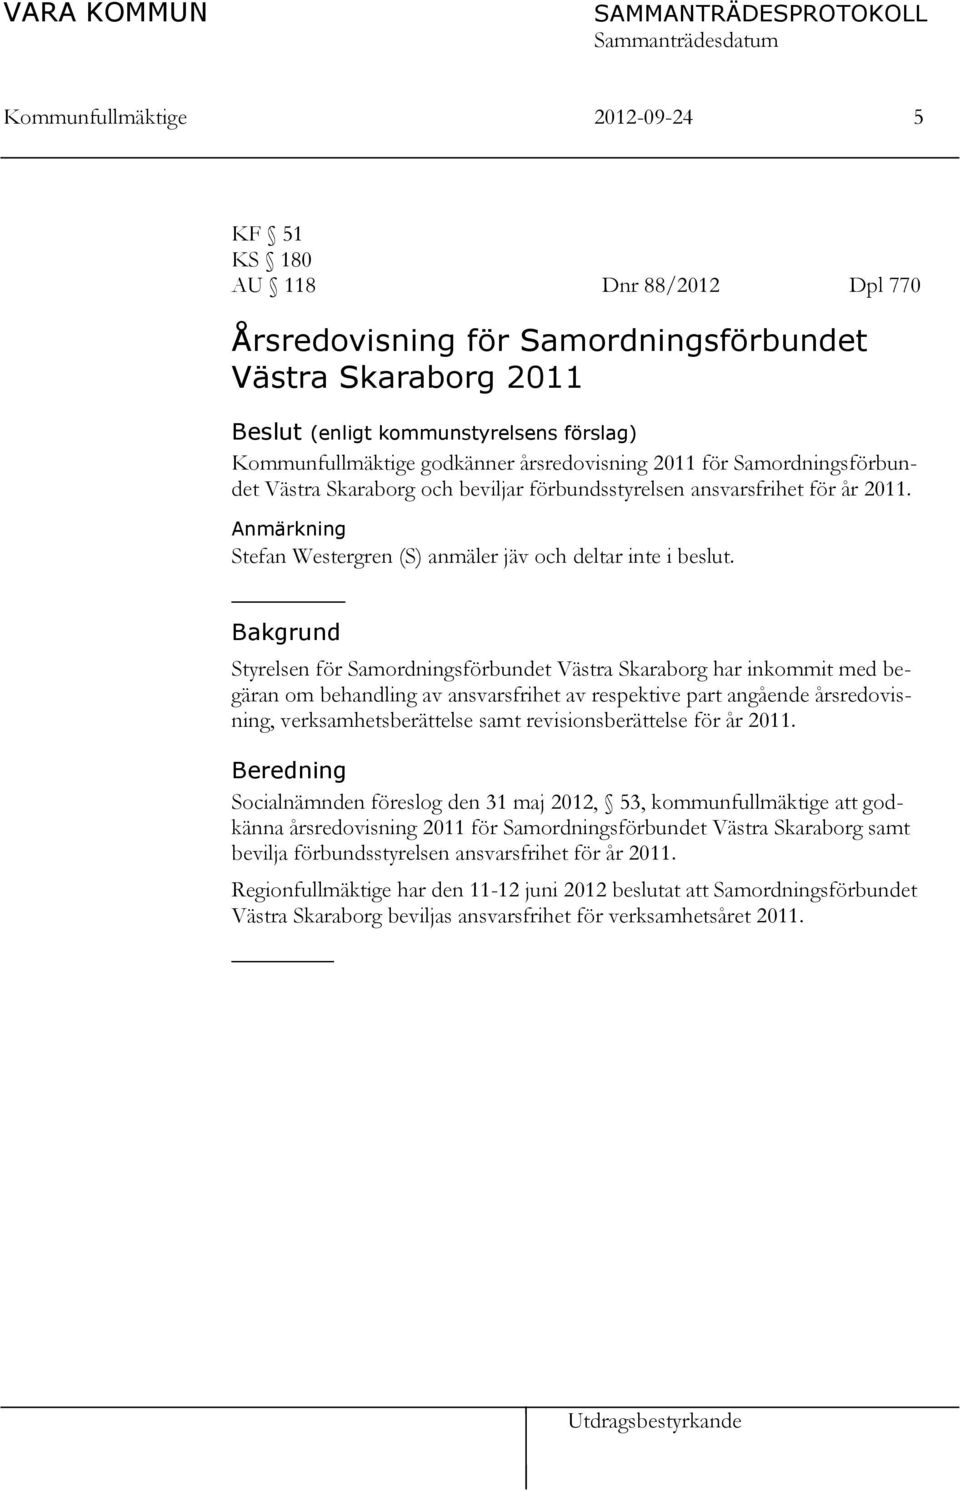 Bakgrund Styrelsen för Samordningsförbundet Västra Skaraborg har inkommit med begäran om behandling av ansvarsfrihet av respektive part angående årsredovisning, verksamhetsberättelse samt